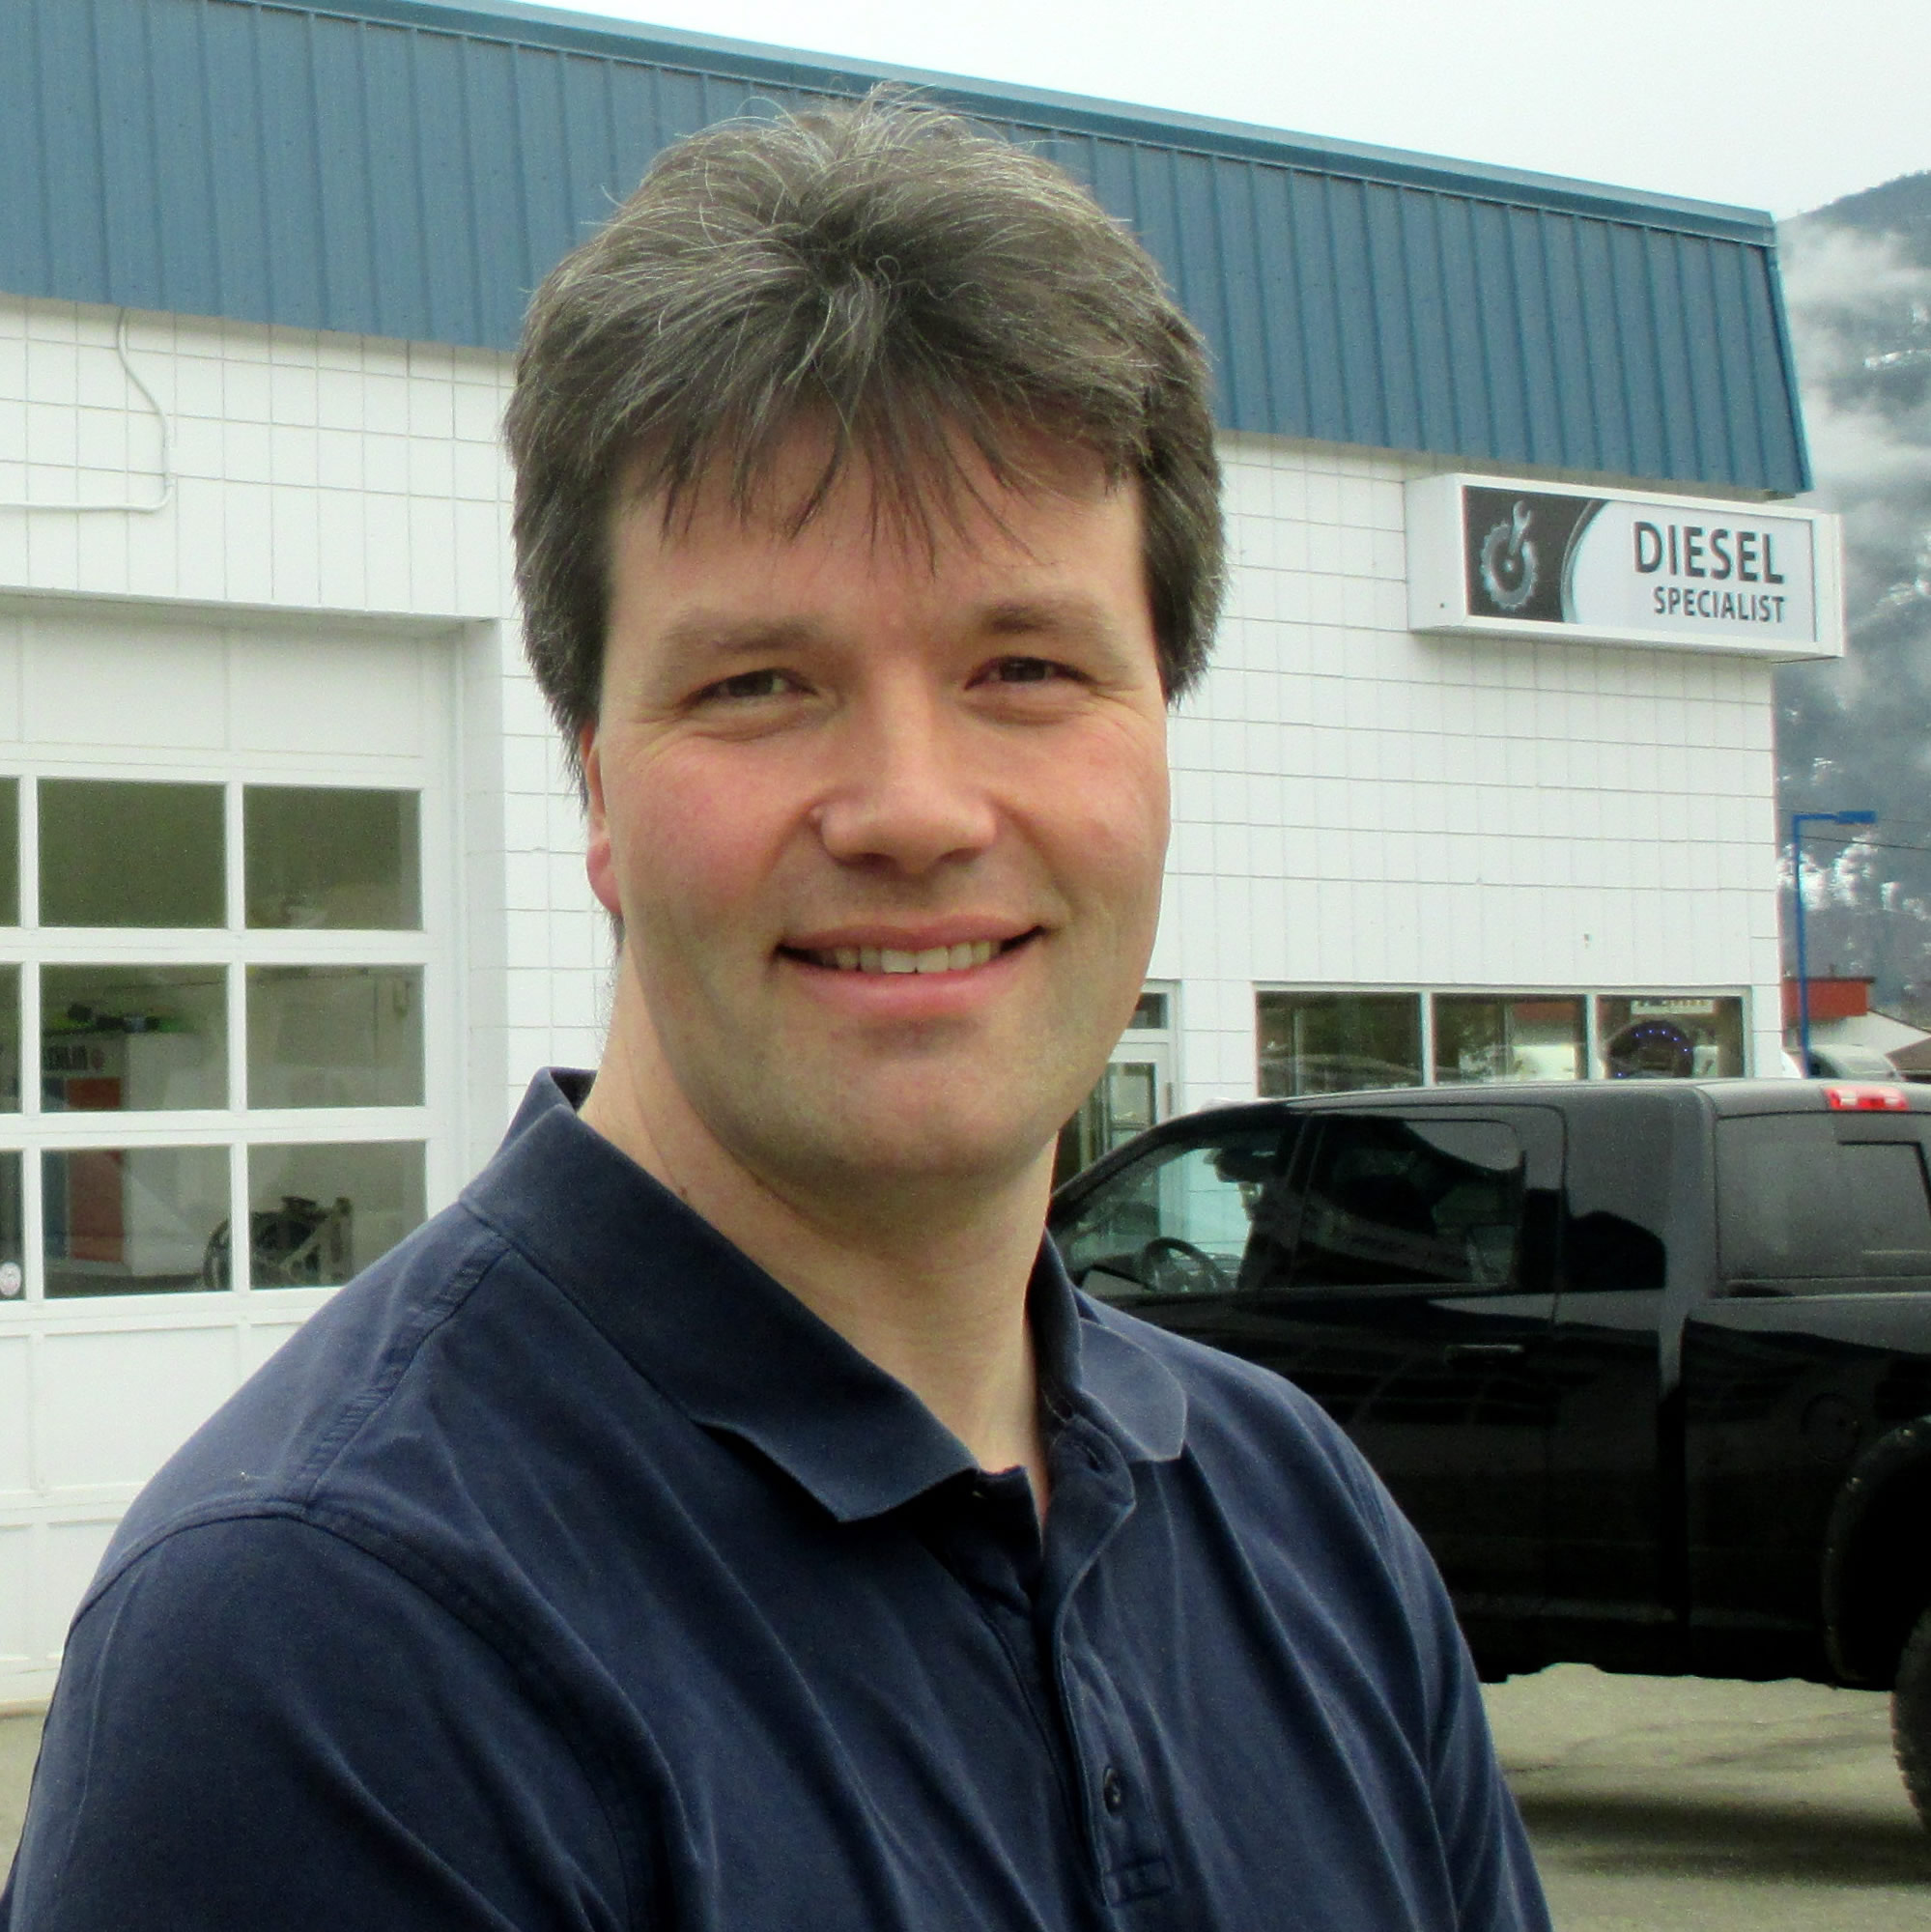 Eric Van Hoogevest owns and operates In Gear Mechanical in Castlegar, B.C.